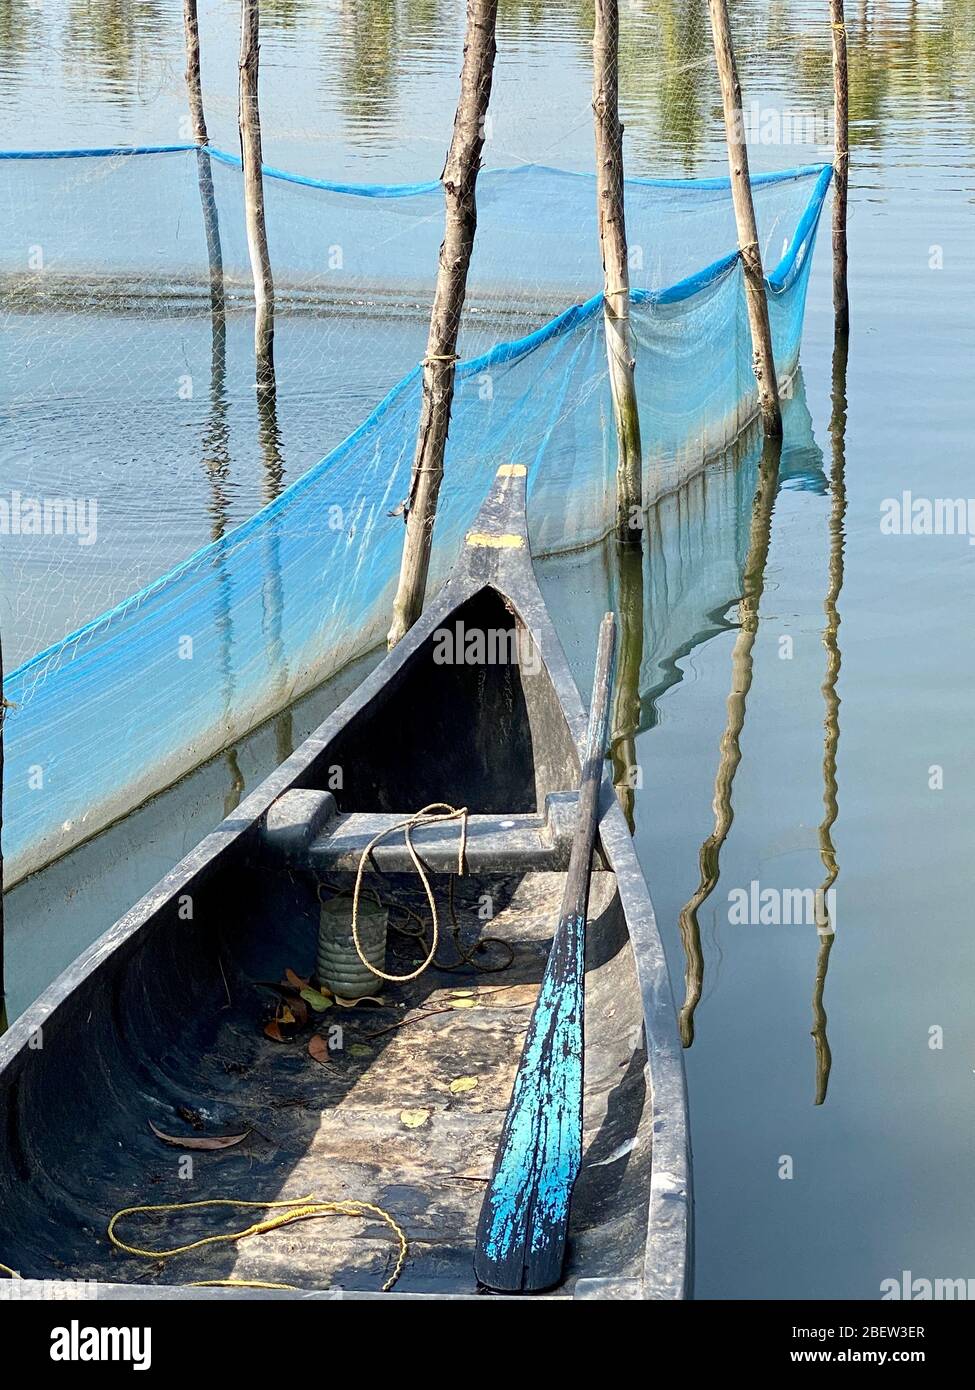 Canoa in legno con remo dipinto di blu orlato da un allevamento di pesci Foto Stock